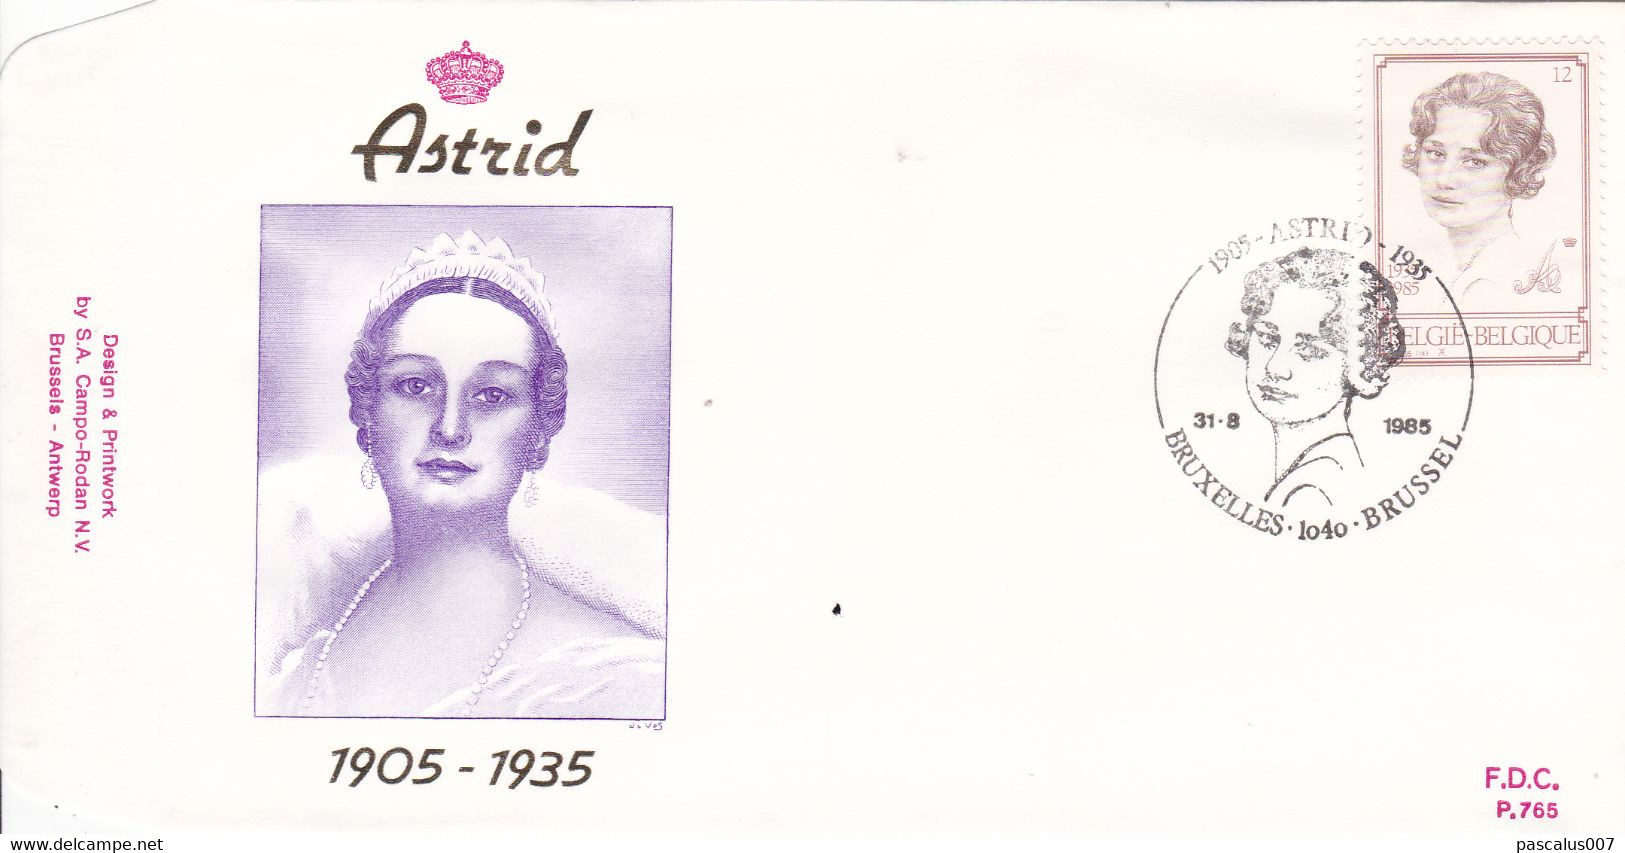 B01-300 - FDC P765  - Cob 2183 - Royal Dynastie S.M. La Reine Astrid En 1935 - 31-08-1985 Bruxelles 1040 Brussel - 1981-1990